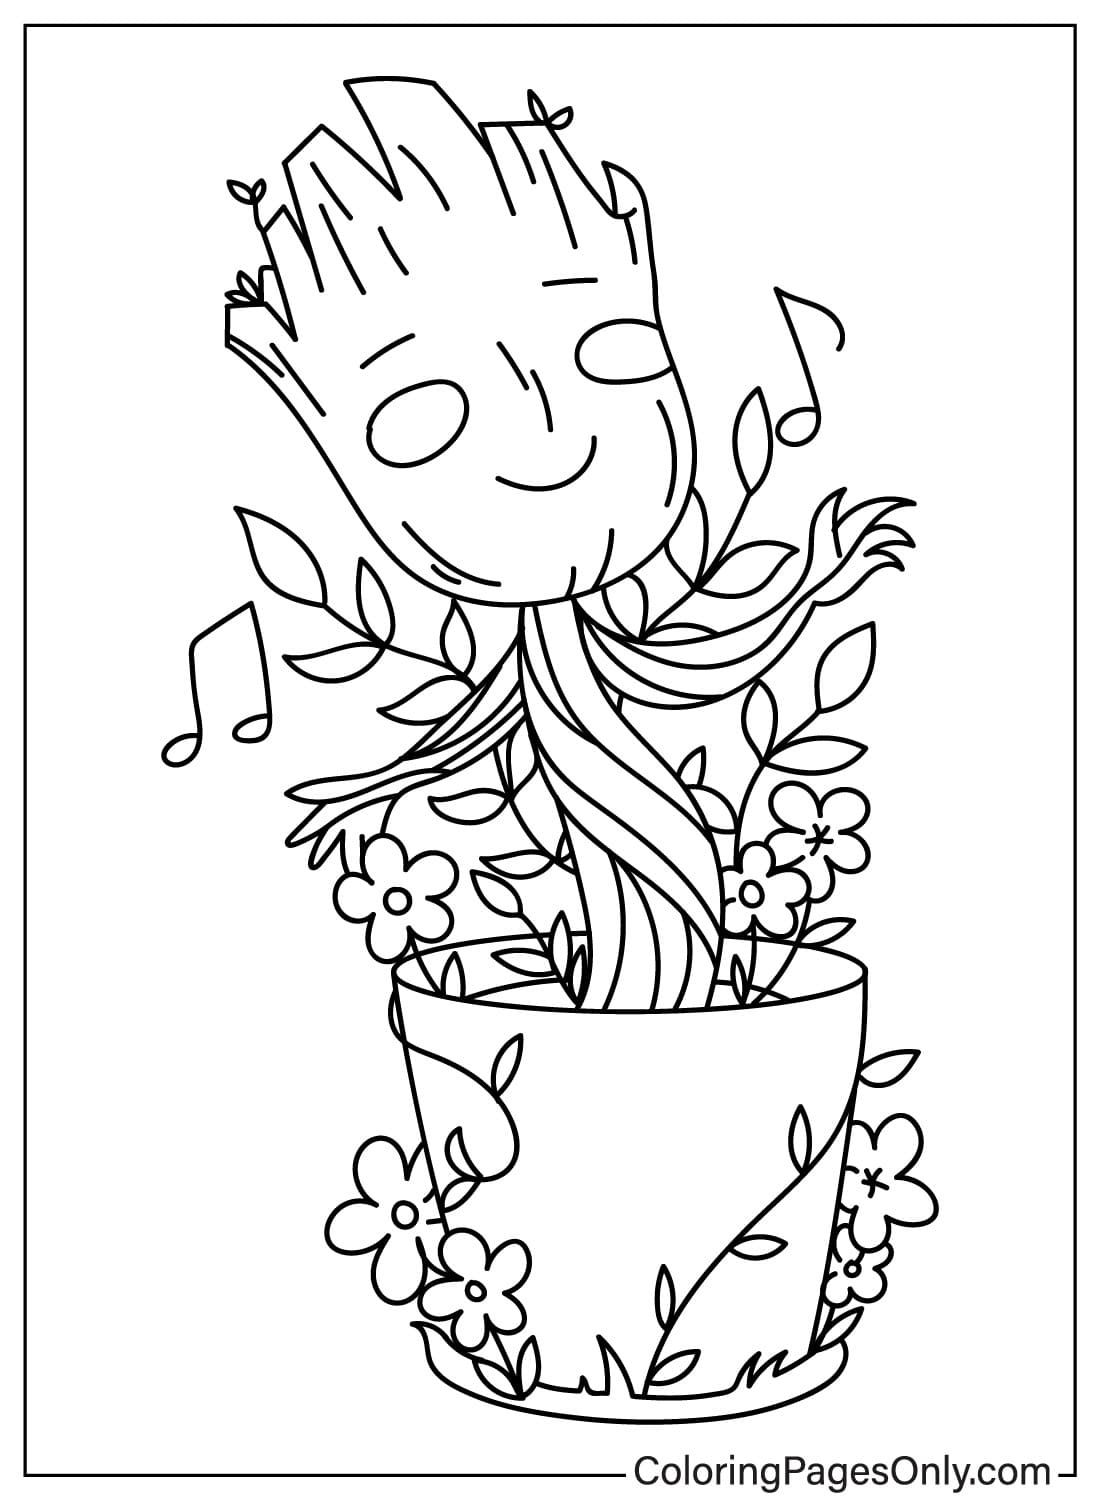 Página para colorear de Groot y flores de Groot